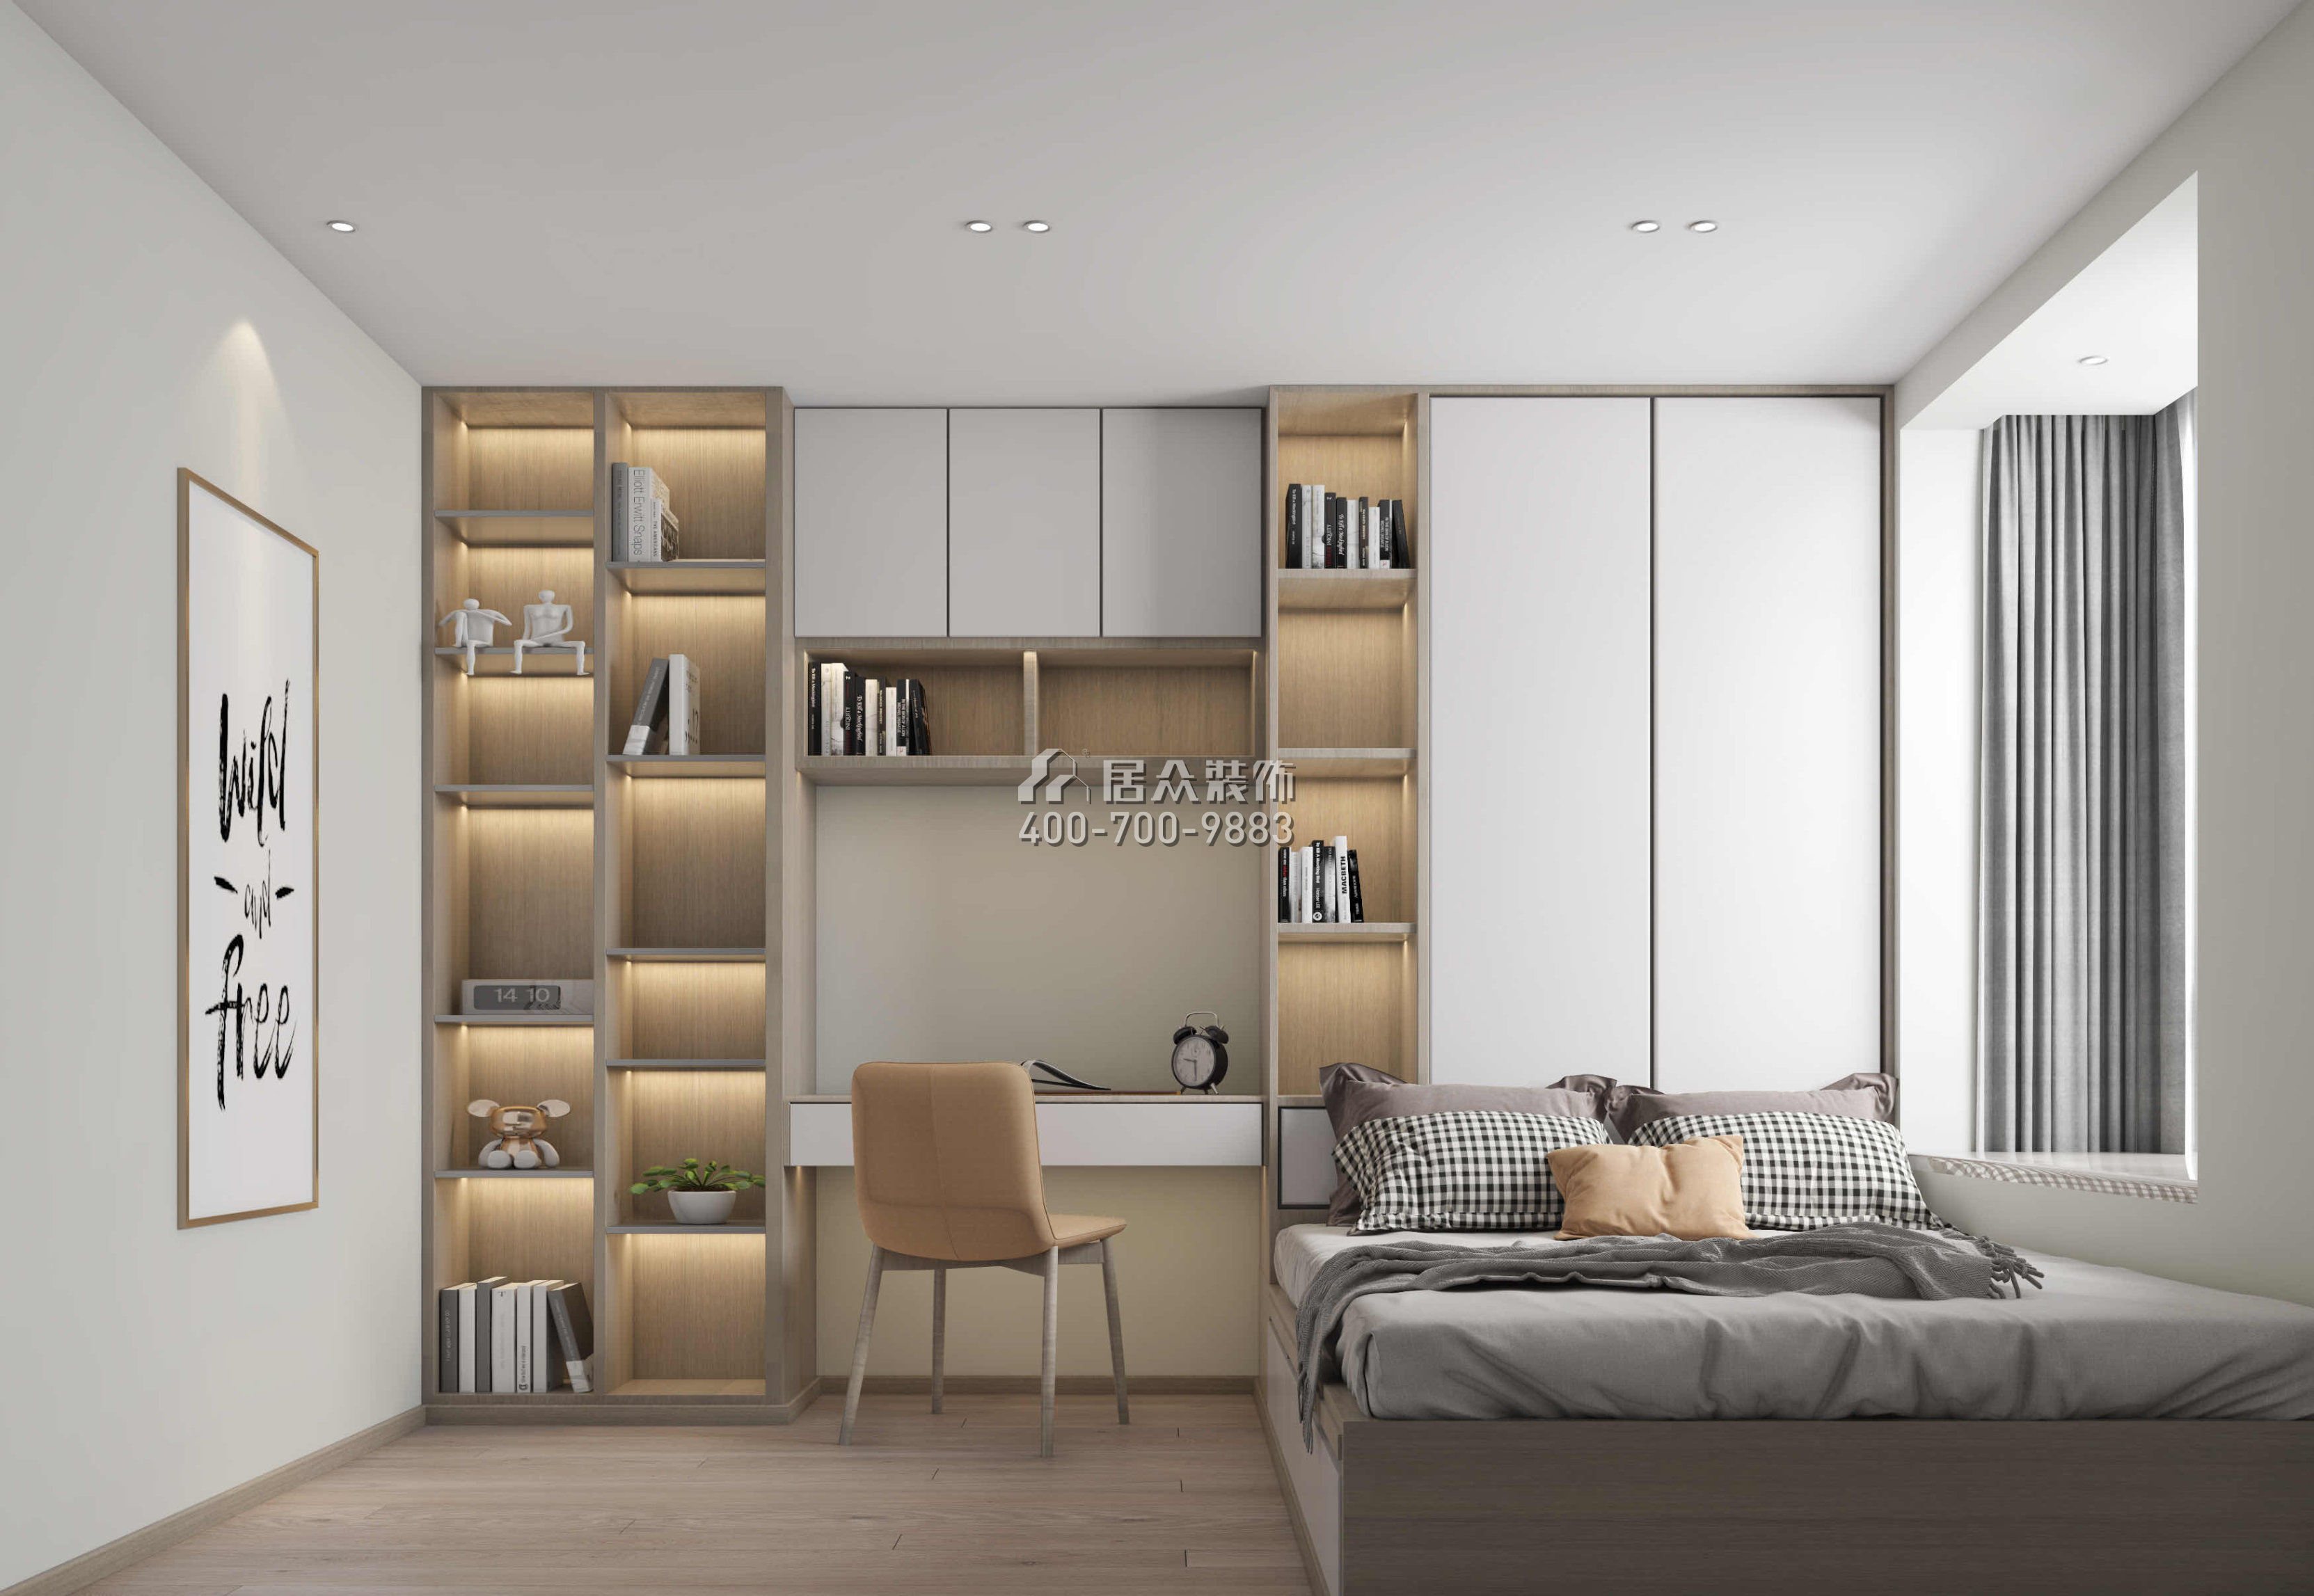 新世紀頤龍灣120平方米現代簡約風格平層戶型臥室書房一體裝修效果圖